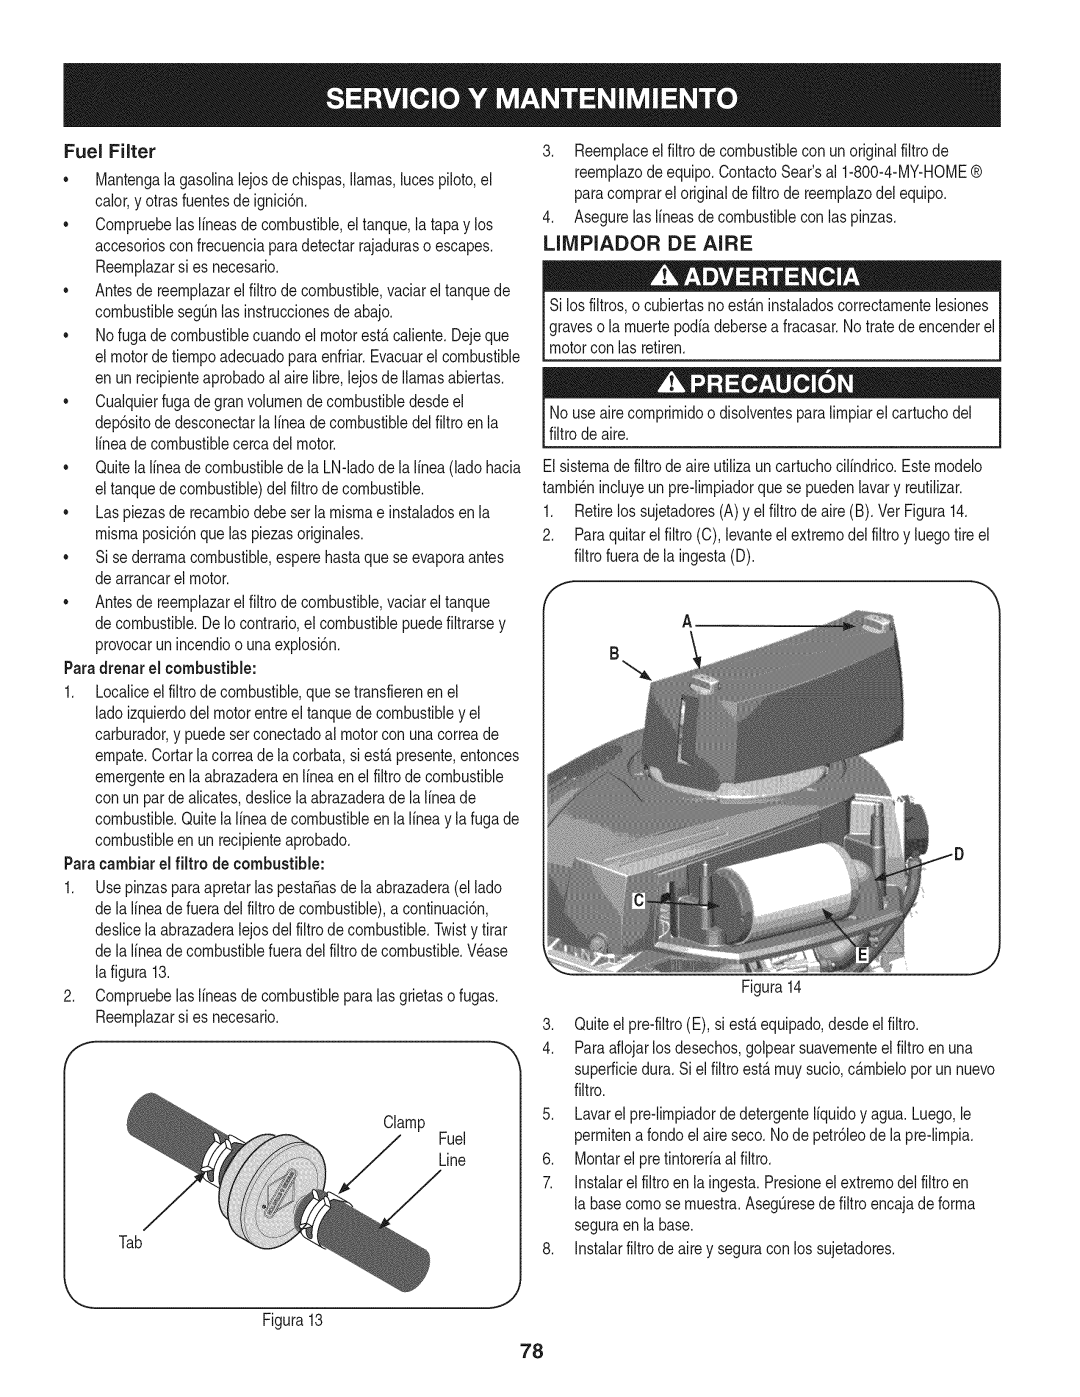 Craftsman 247.28902 manual Limpiador De Aire, Fuel Filter, Paradrenar el combustible, Paracambiarel filtro de combustible 